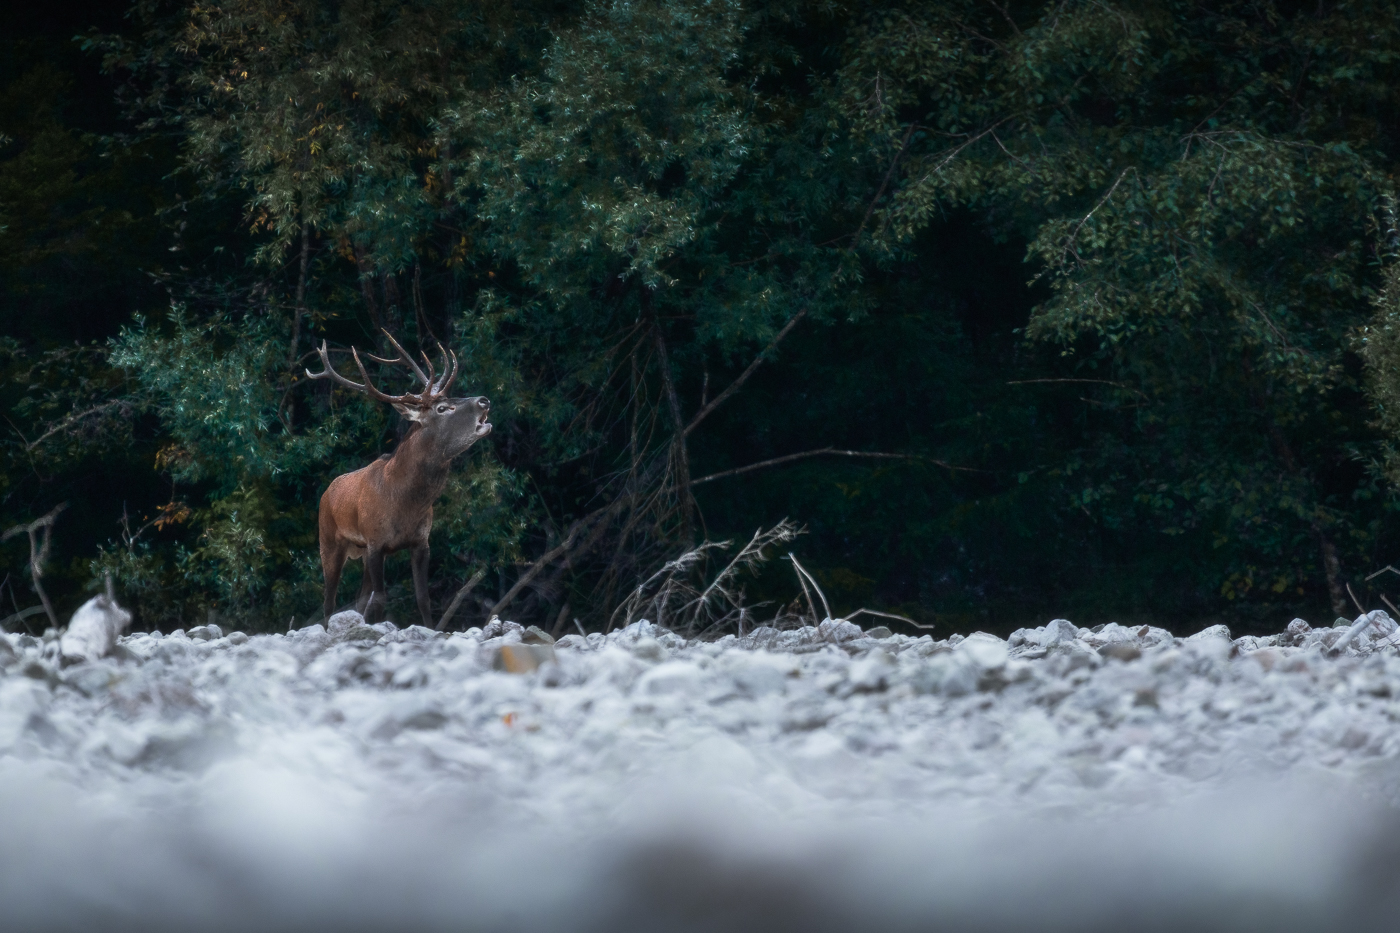 Il maschio esce dall’ombra del bosco e lancia il suo bramito agli sfidanti. Cervo nobile (Cervus elaphus). Parco Naturale Dolomiti Friulane, Italia.